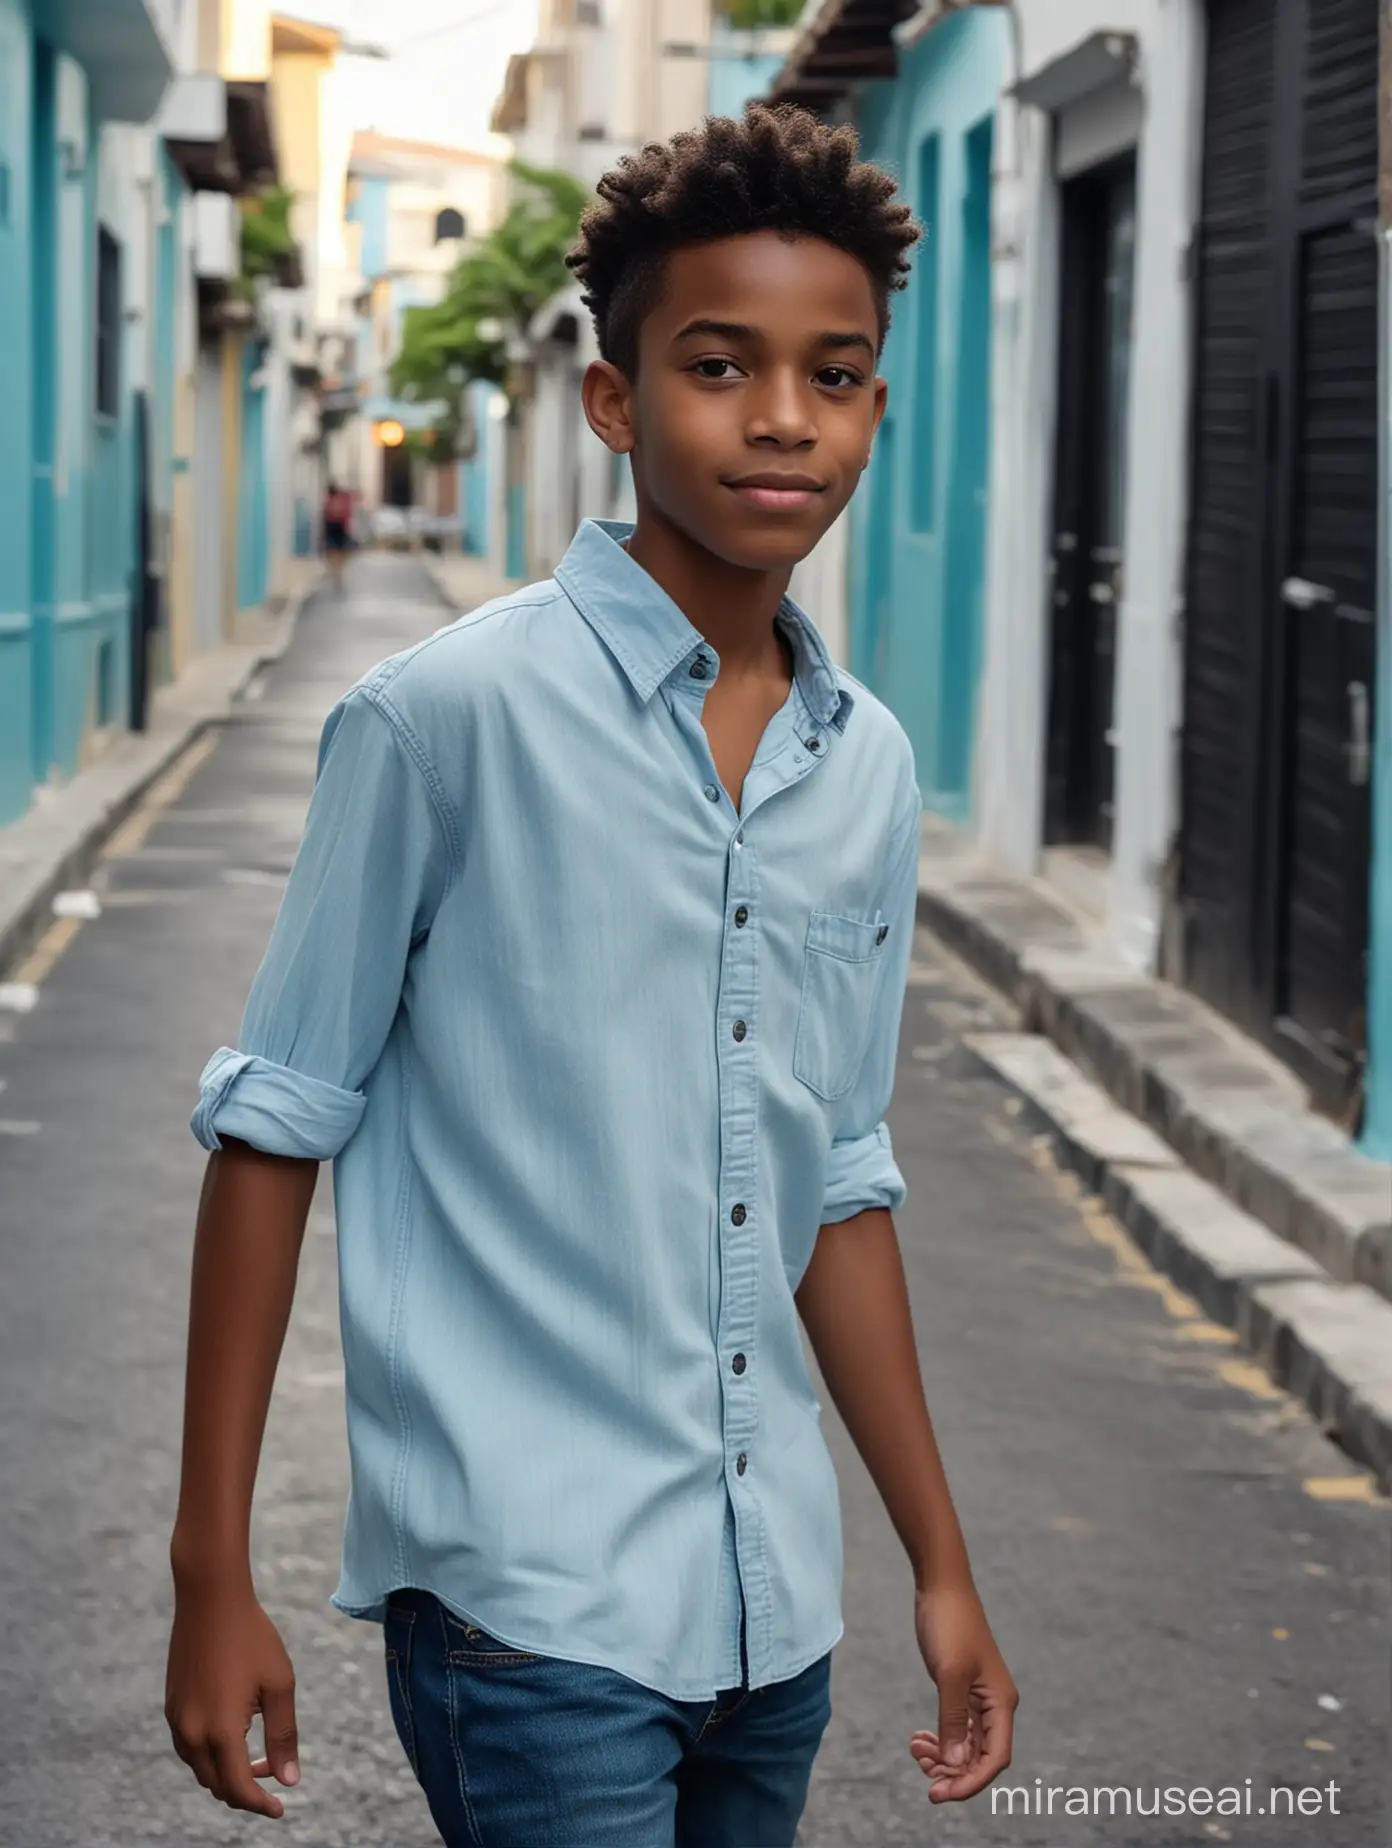 Caribbean Teenage Boy Strolling Down a Local Street in Casual Fashionwear